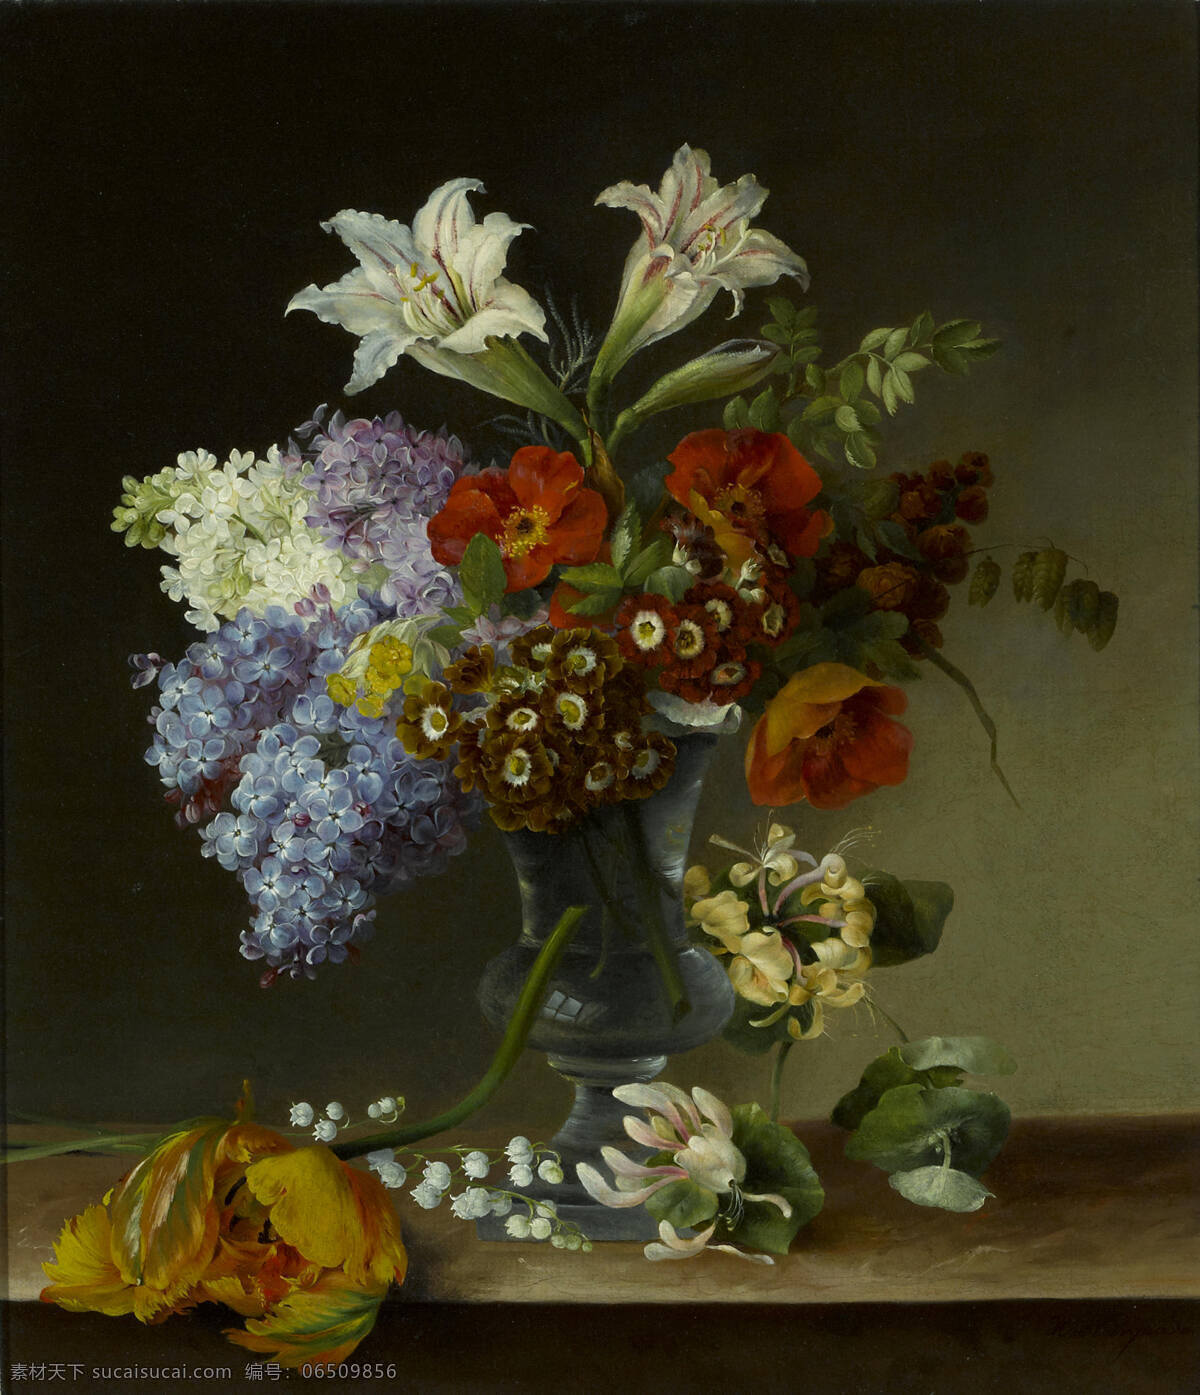 静物鲜花 混搭鲜花 琉璃花瓶 百合花 散落的花朵 古典油画 油画 绘画书法 文化艺术